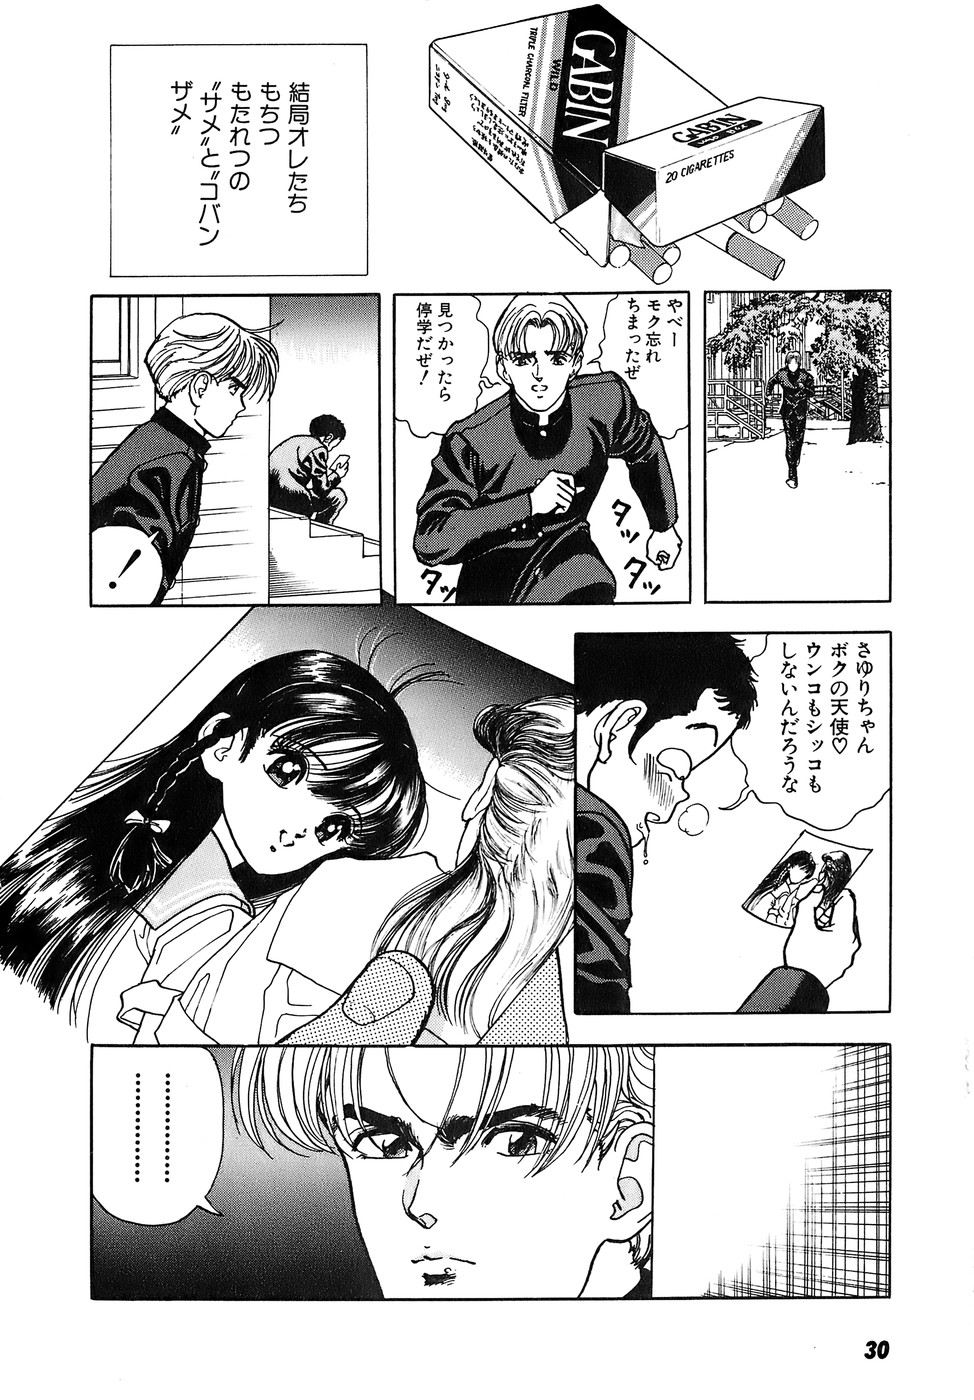 [U-Jin] Kanojo no Inbou 2 - Conspiracy 2 page 31 full